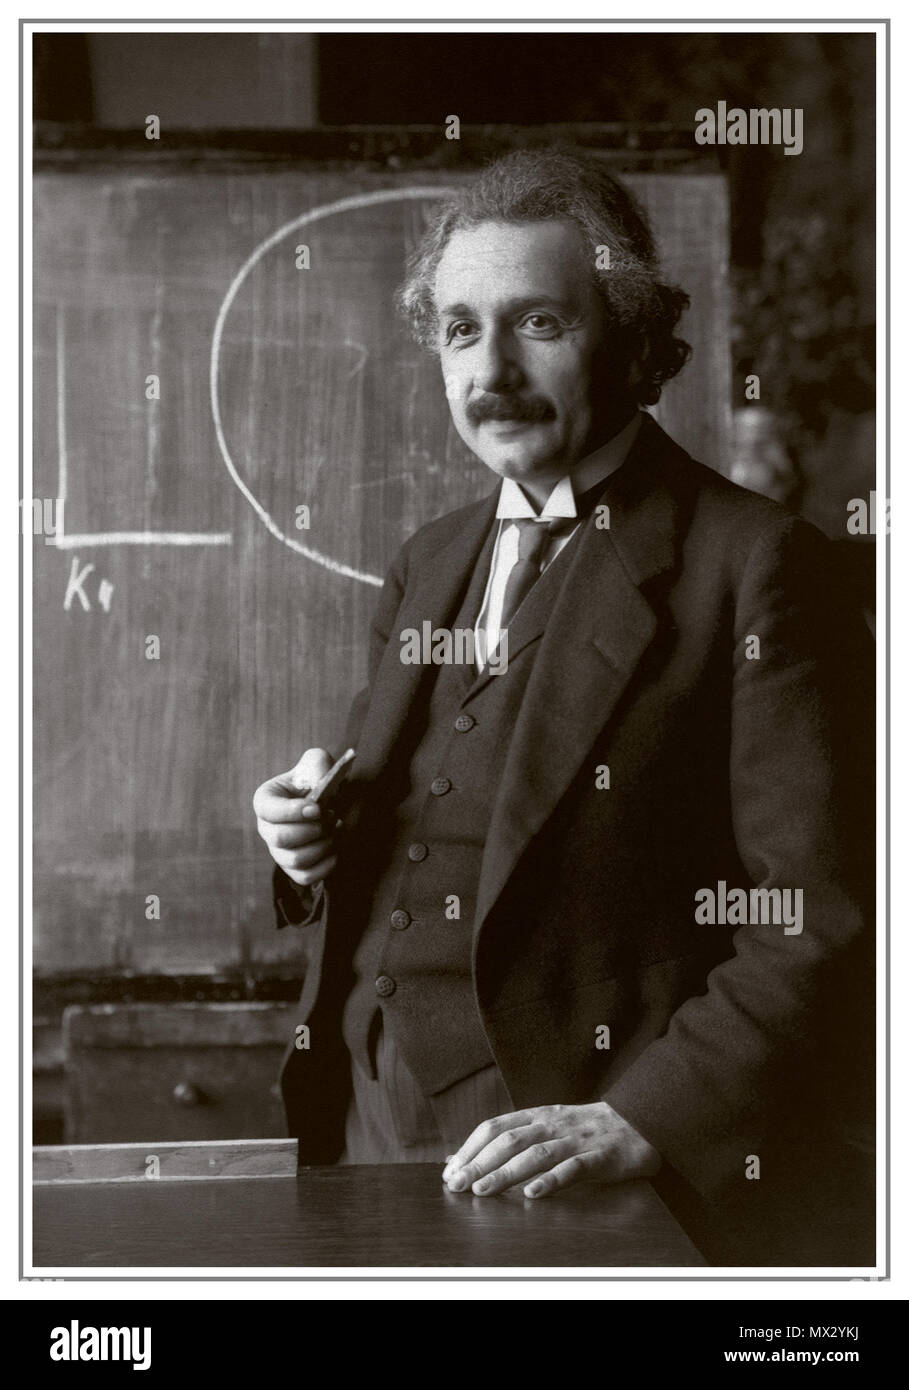 EINSTEIN LECTURE BLACKBOARD Jahrgang 1920 B&W Bild von Albert Einstein, der Gewinner der Nobelpreis für Physik 1921 für seine Verdienste um die theoretische Physik, besonders für seine Entdeckung des Gesetzes des photoelektrischen Effekts" während einer Vorlesung in Wien im Jahre 1920 gezeigt. Stockfoto